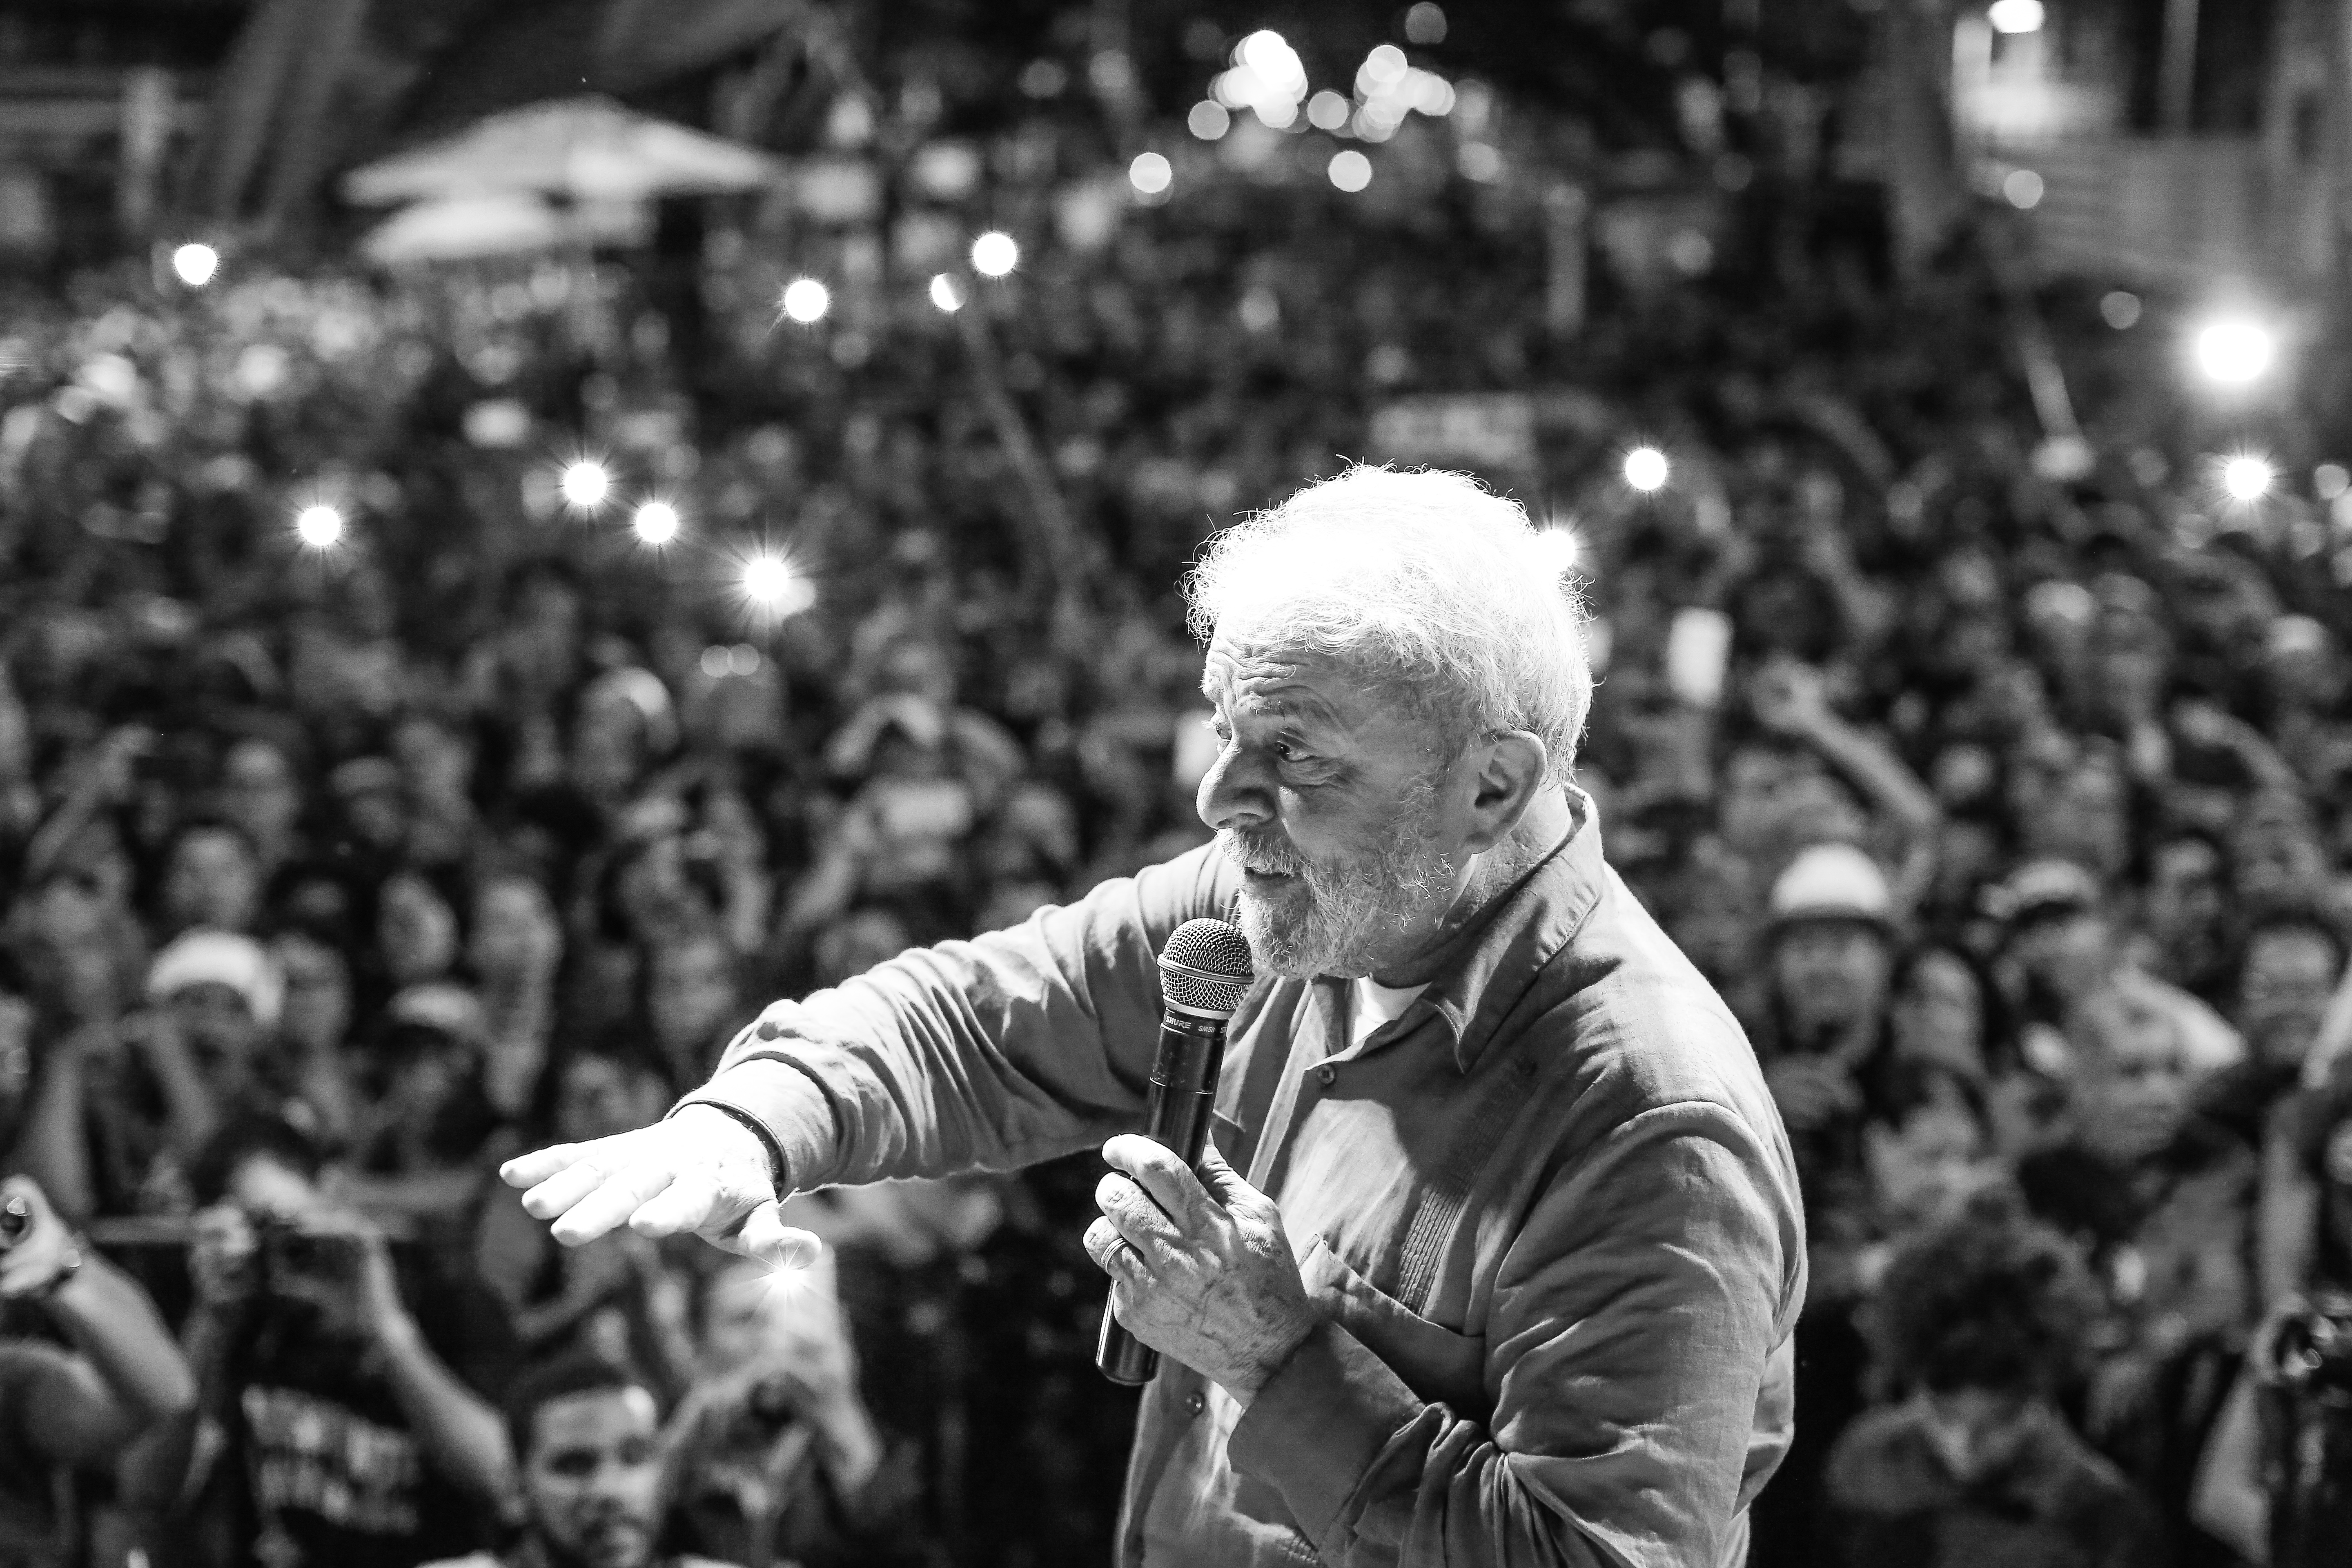 Golpistas sabem que estão mentindo”, diz Lula em Pernambuco | Partido dos  Trabalhadores